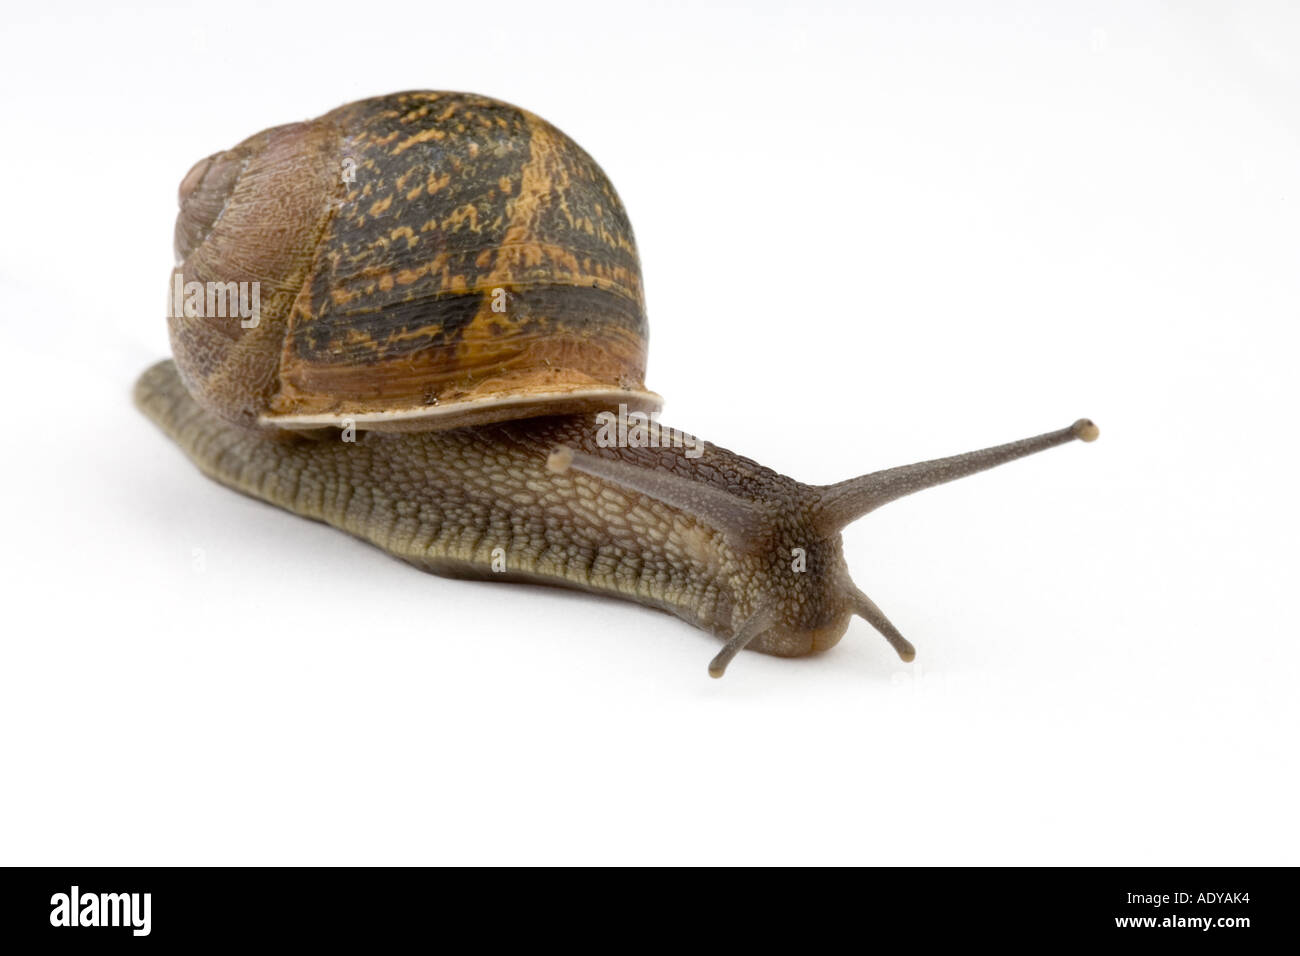 English garden snail Stock Photo